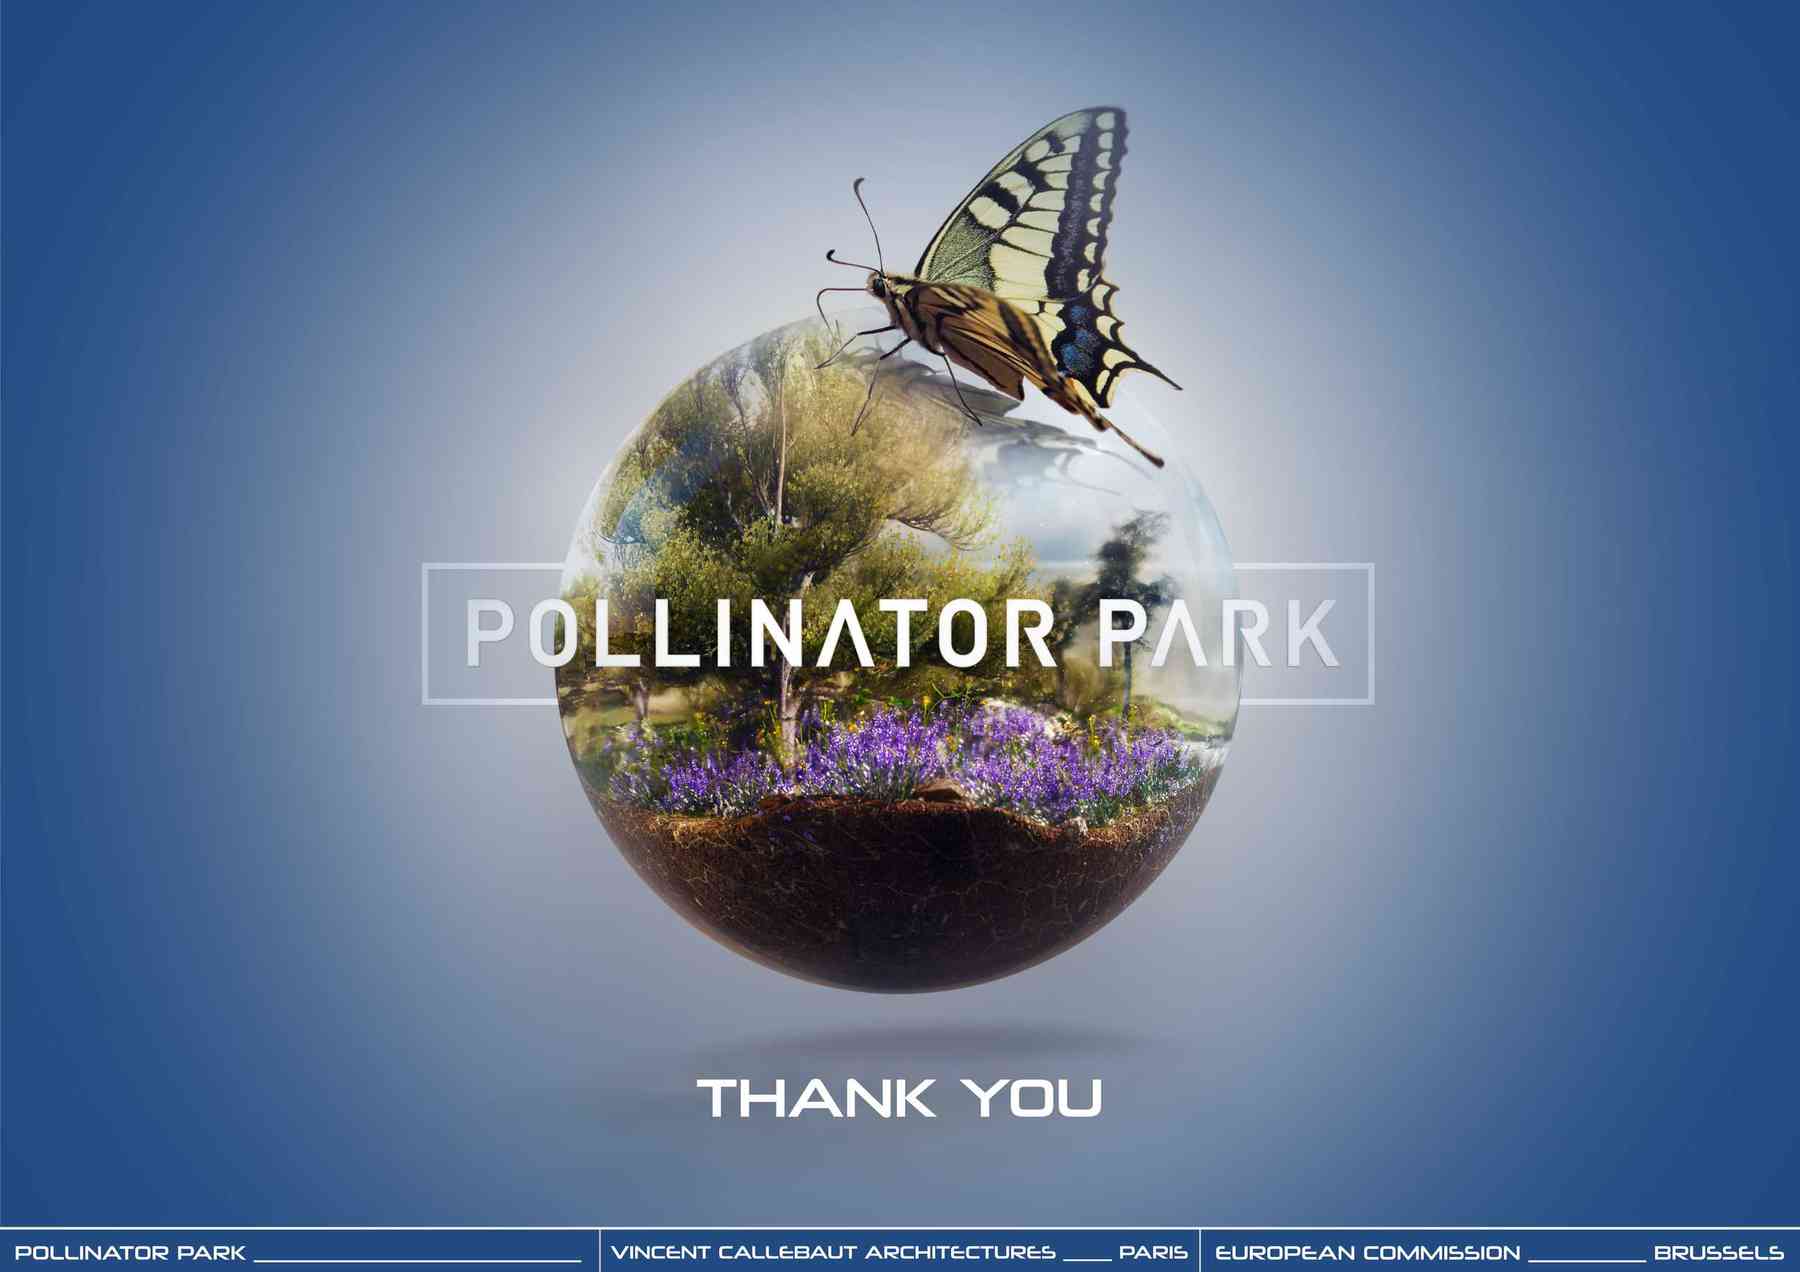 210323_pollinatorpark-polinnatorpark_pl064